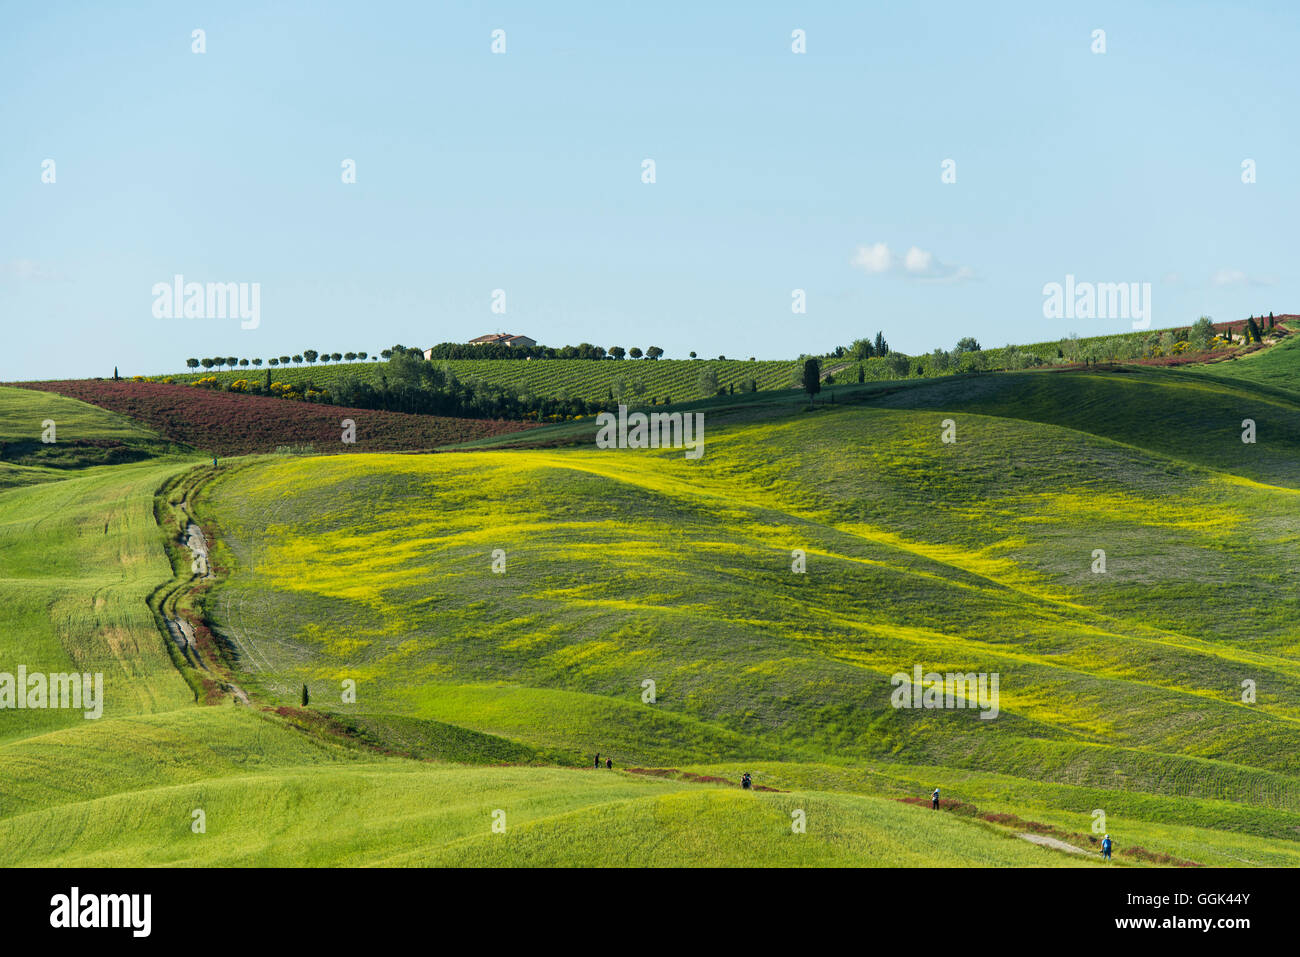 Paesaggio, nei pressi di San Quirico d'Orcia, Val d'Orcia, in provincia di Siena, Toscana, Italia, patrimonio mondiale dell UNESCO Foto Stock